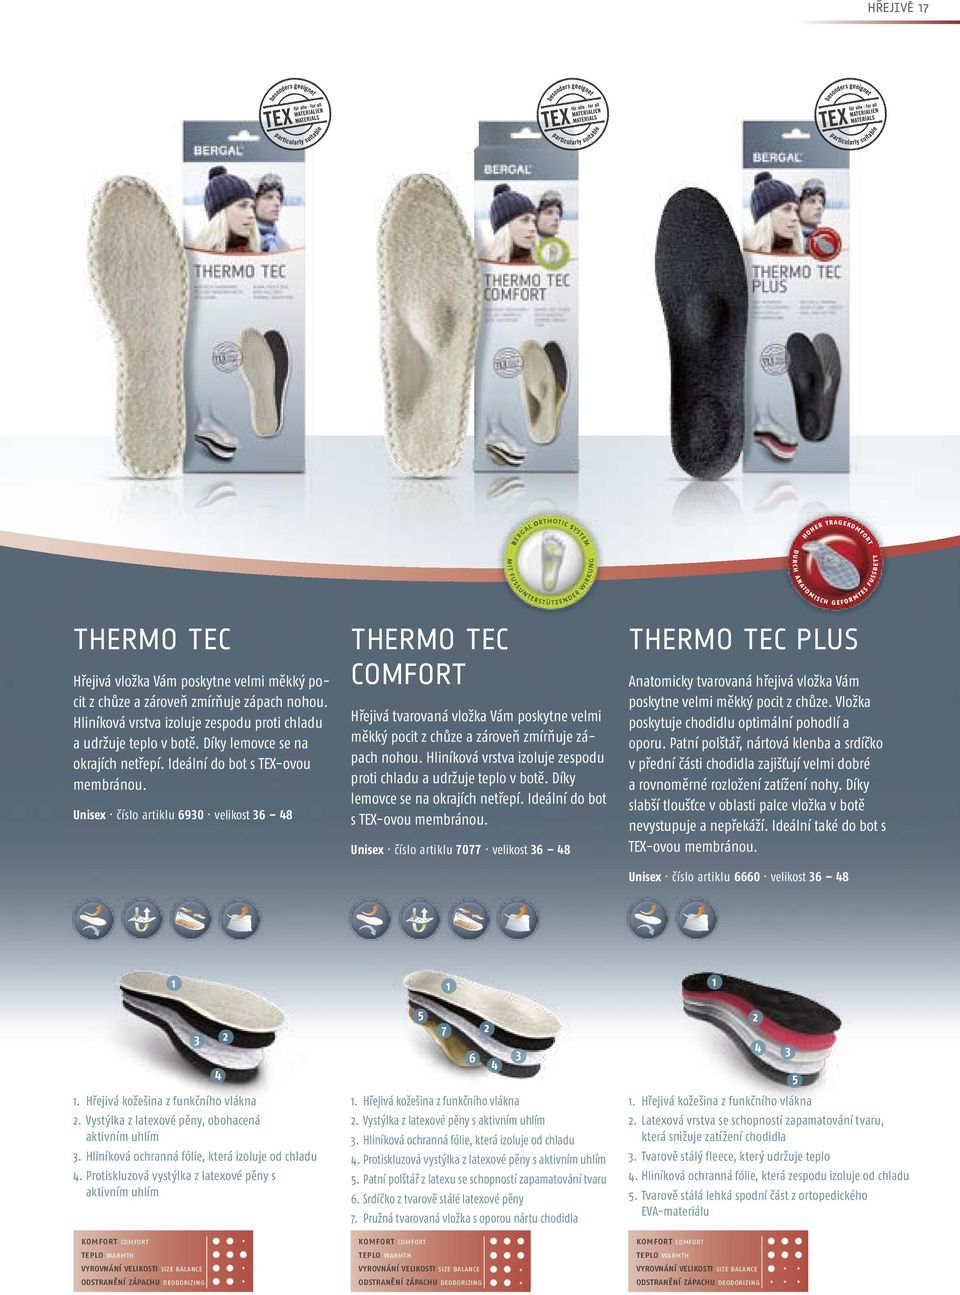 Unisex číslo artiklu 690 velikost 6 48 THERMO TEC COMFORT Hřejivá tvarovaná vložka Vám poskytne velmi měkký pocit z chůze a zároveň zmírňuje zápach nohou.